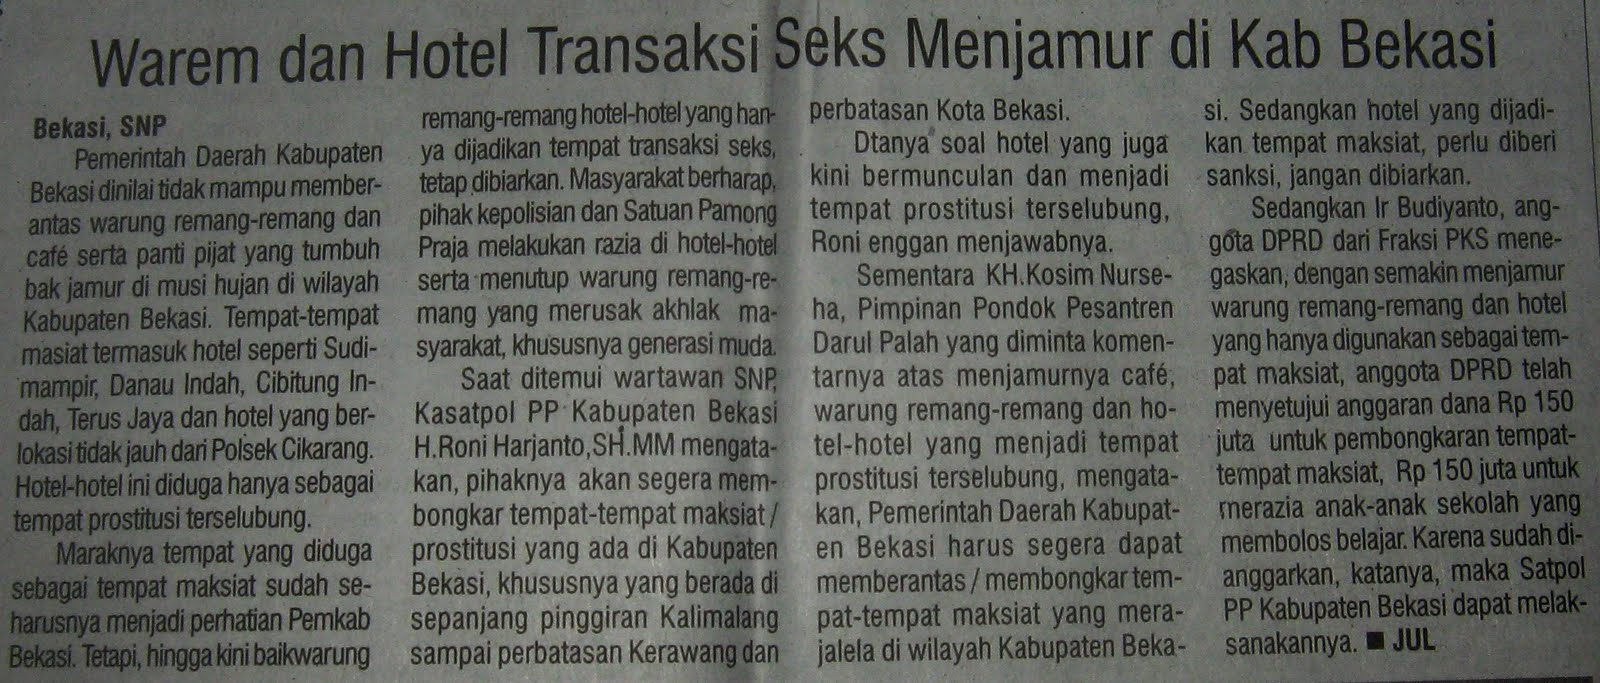 Warem dan Hotel Transaksi Seks Menjamur di Kab Bekasi 